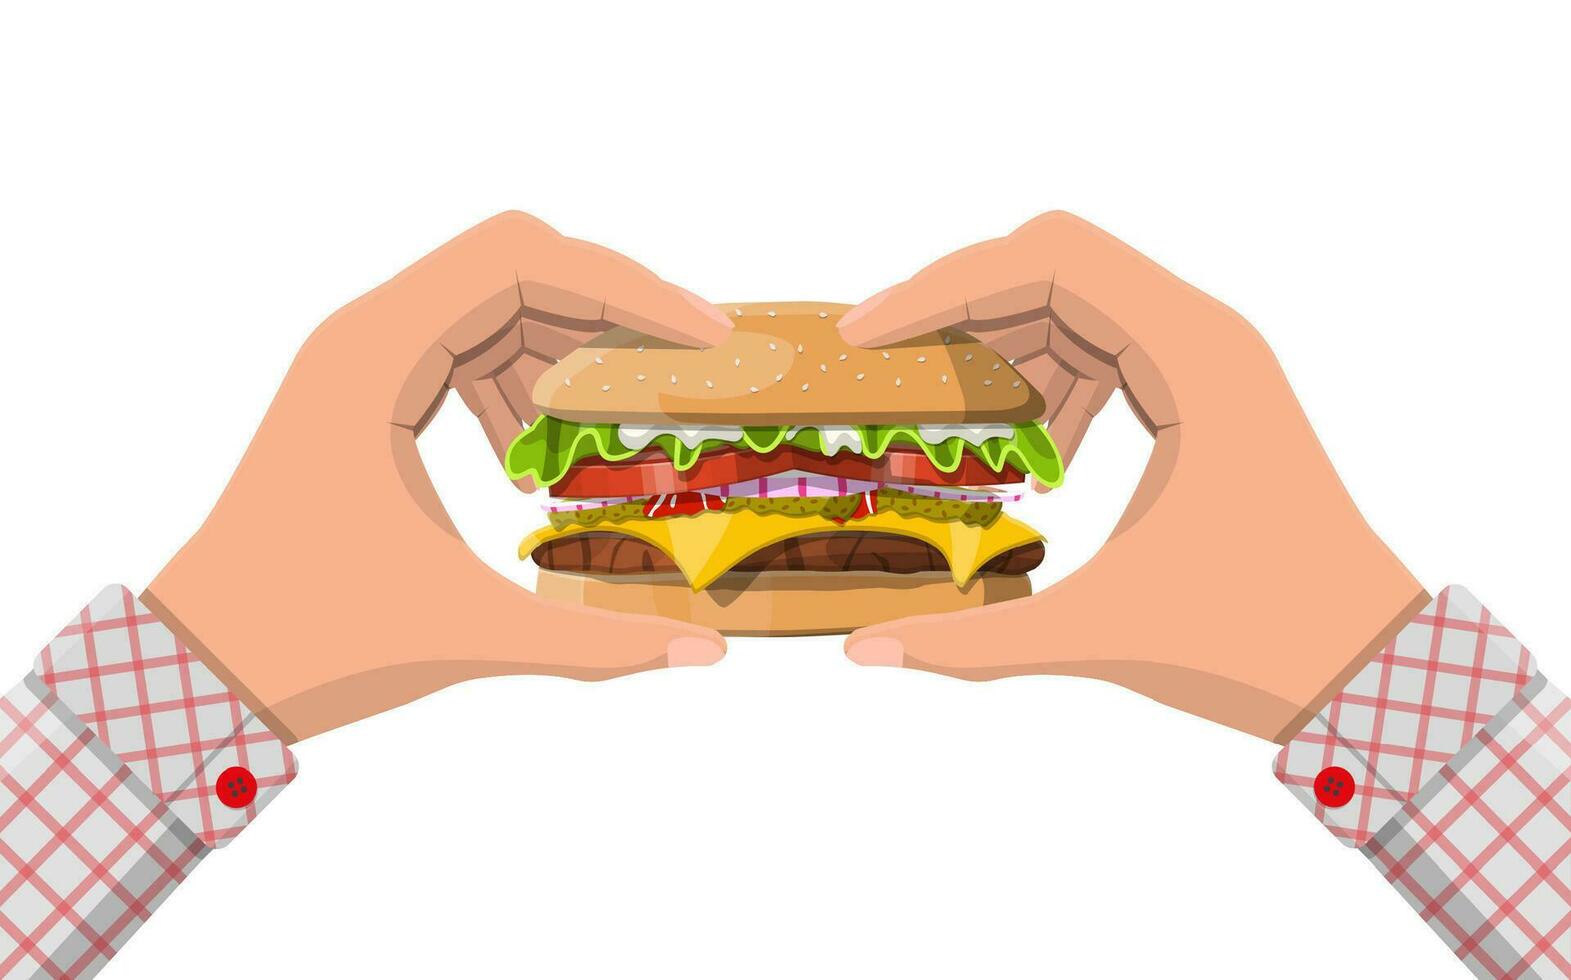 gott burger isolerat i händer. burger med lök, saltade gurka, sallad, tomater, ost, sås, bulle med sesam frön och nötkött kotlett. snabb mat. vektor illustration.